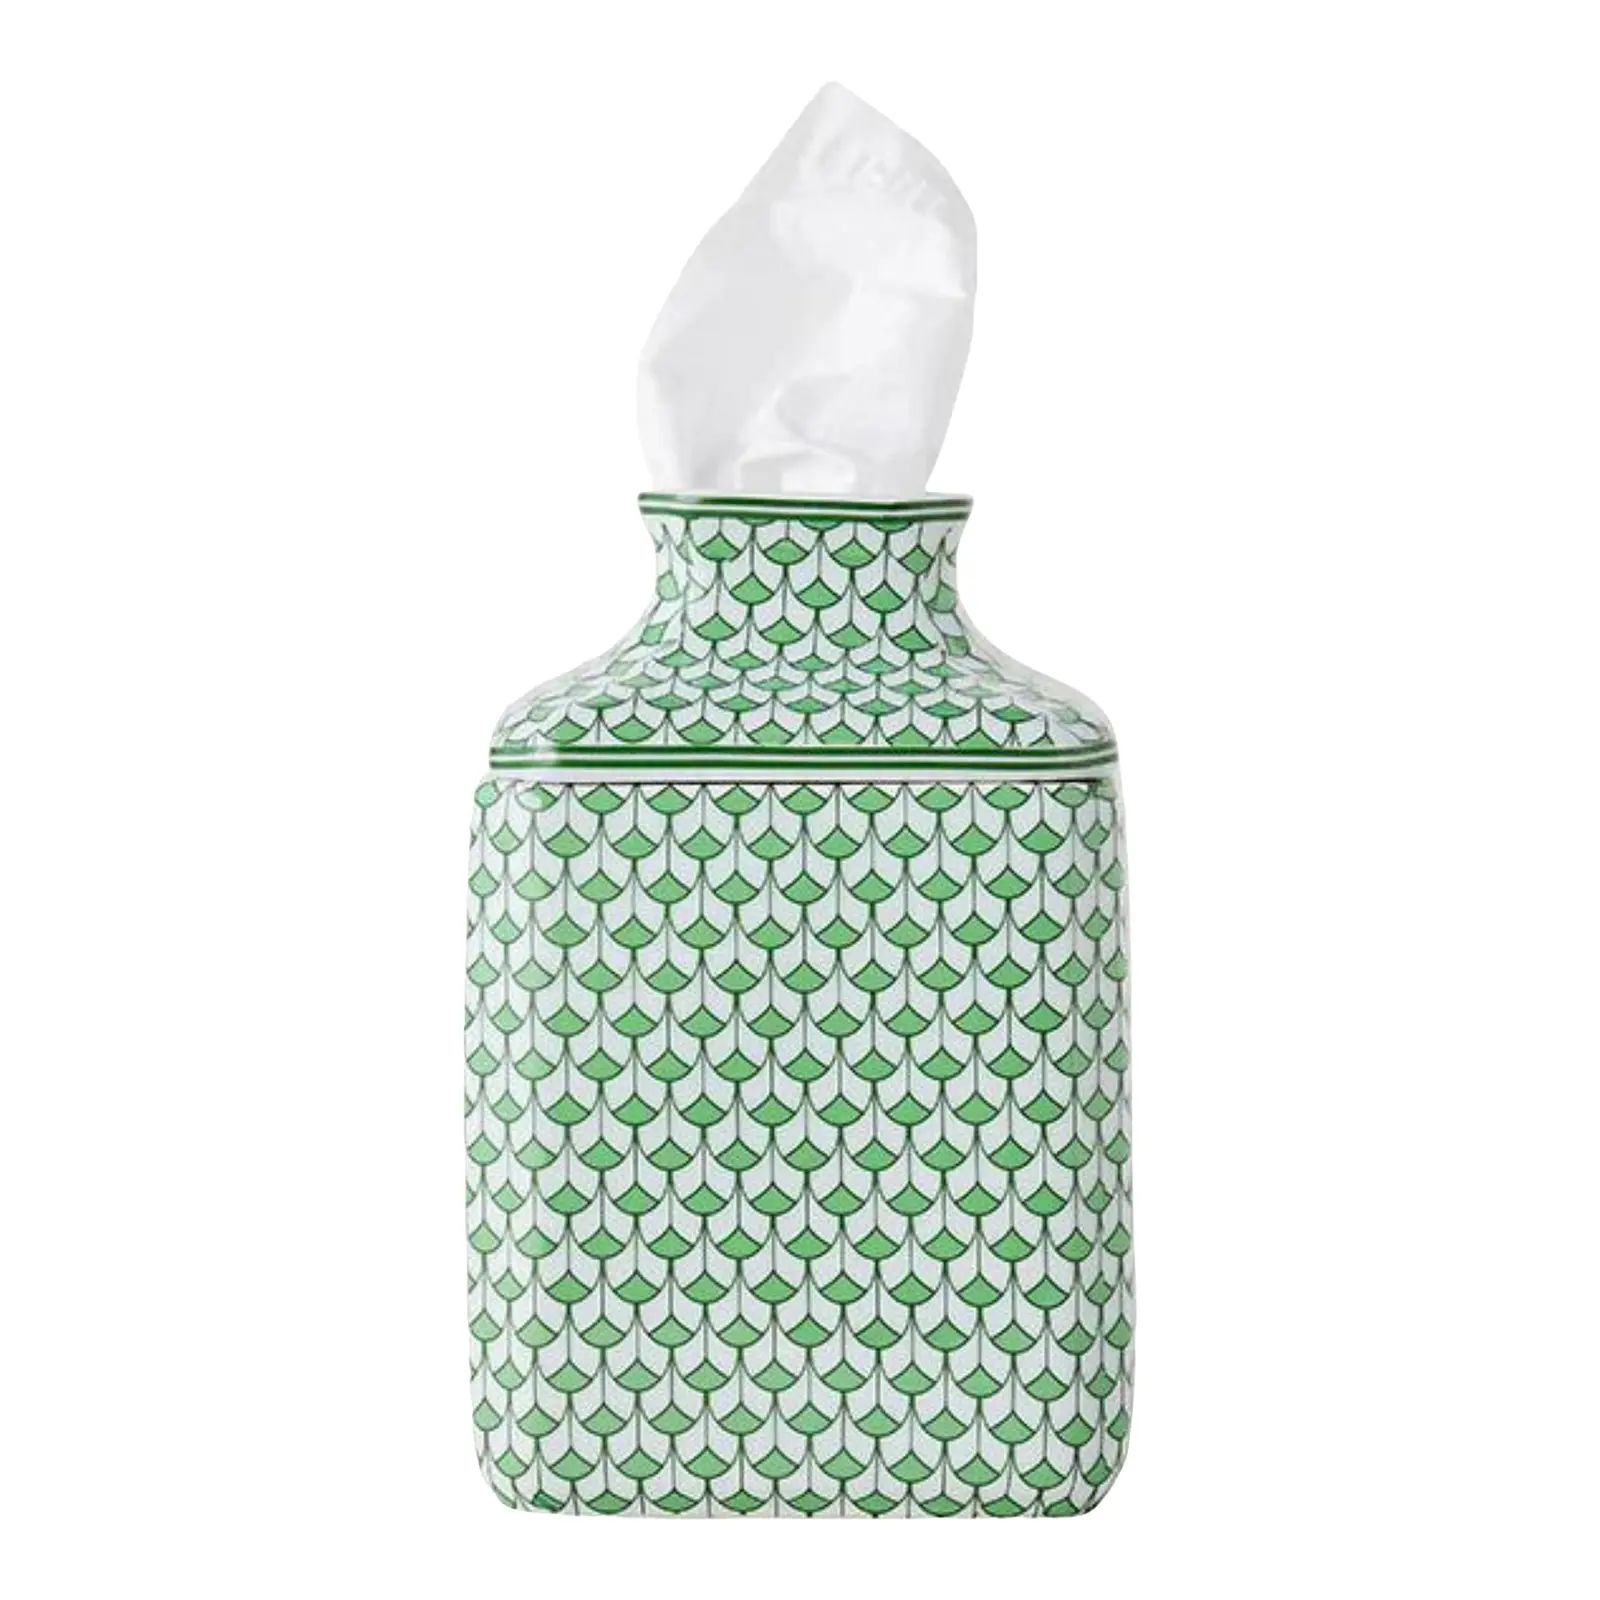 Green & White Fishnet Ceramic Tissue Box Cover | Chairish